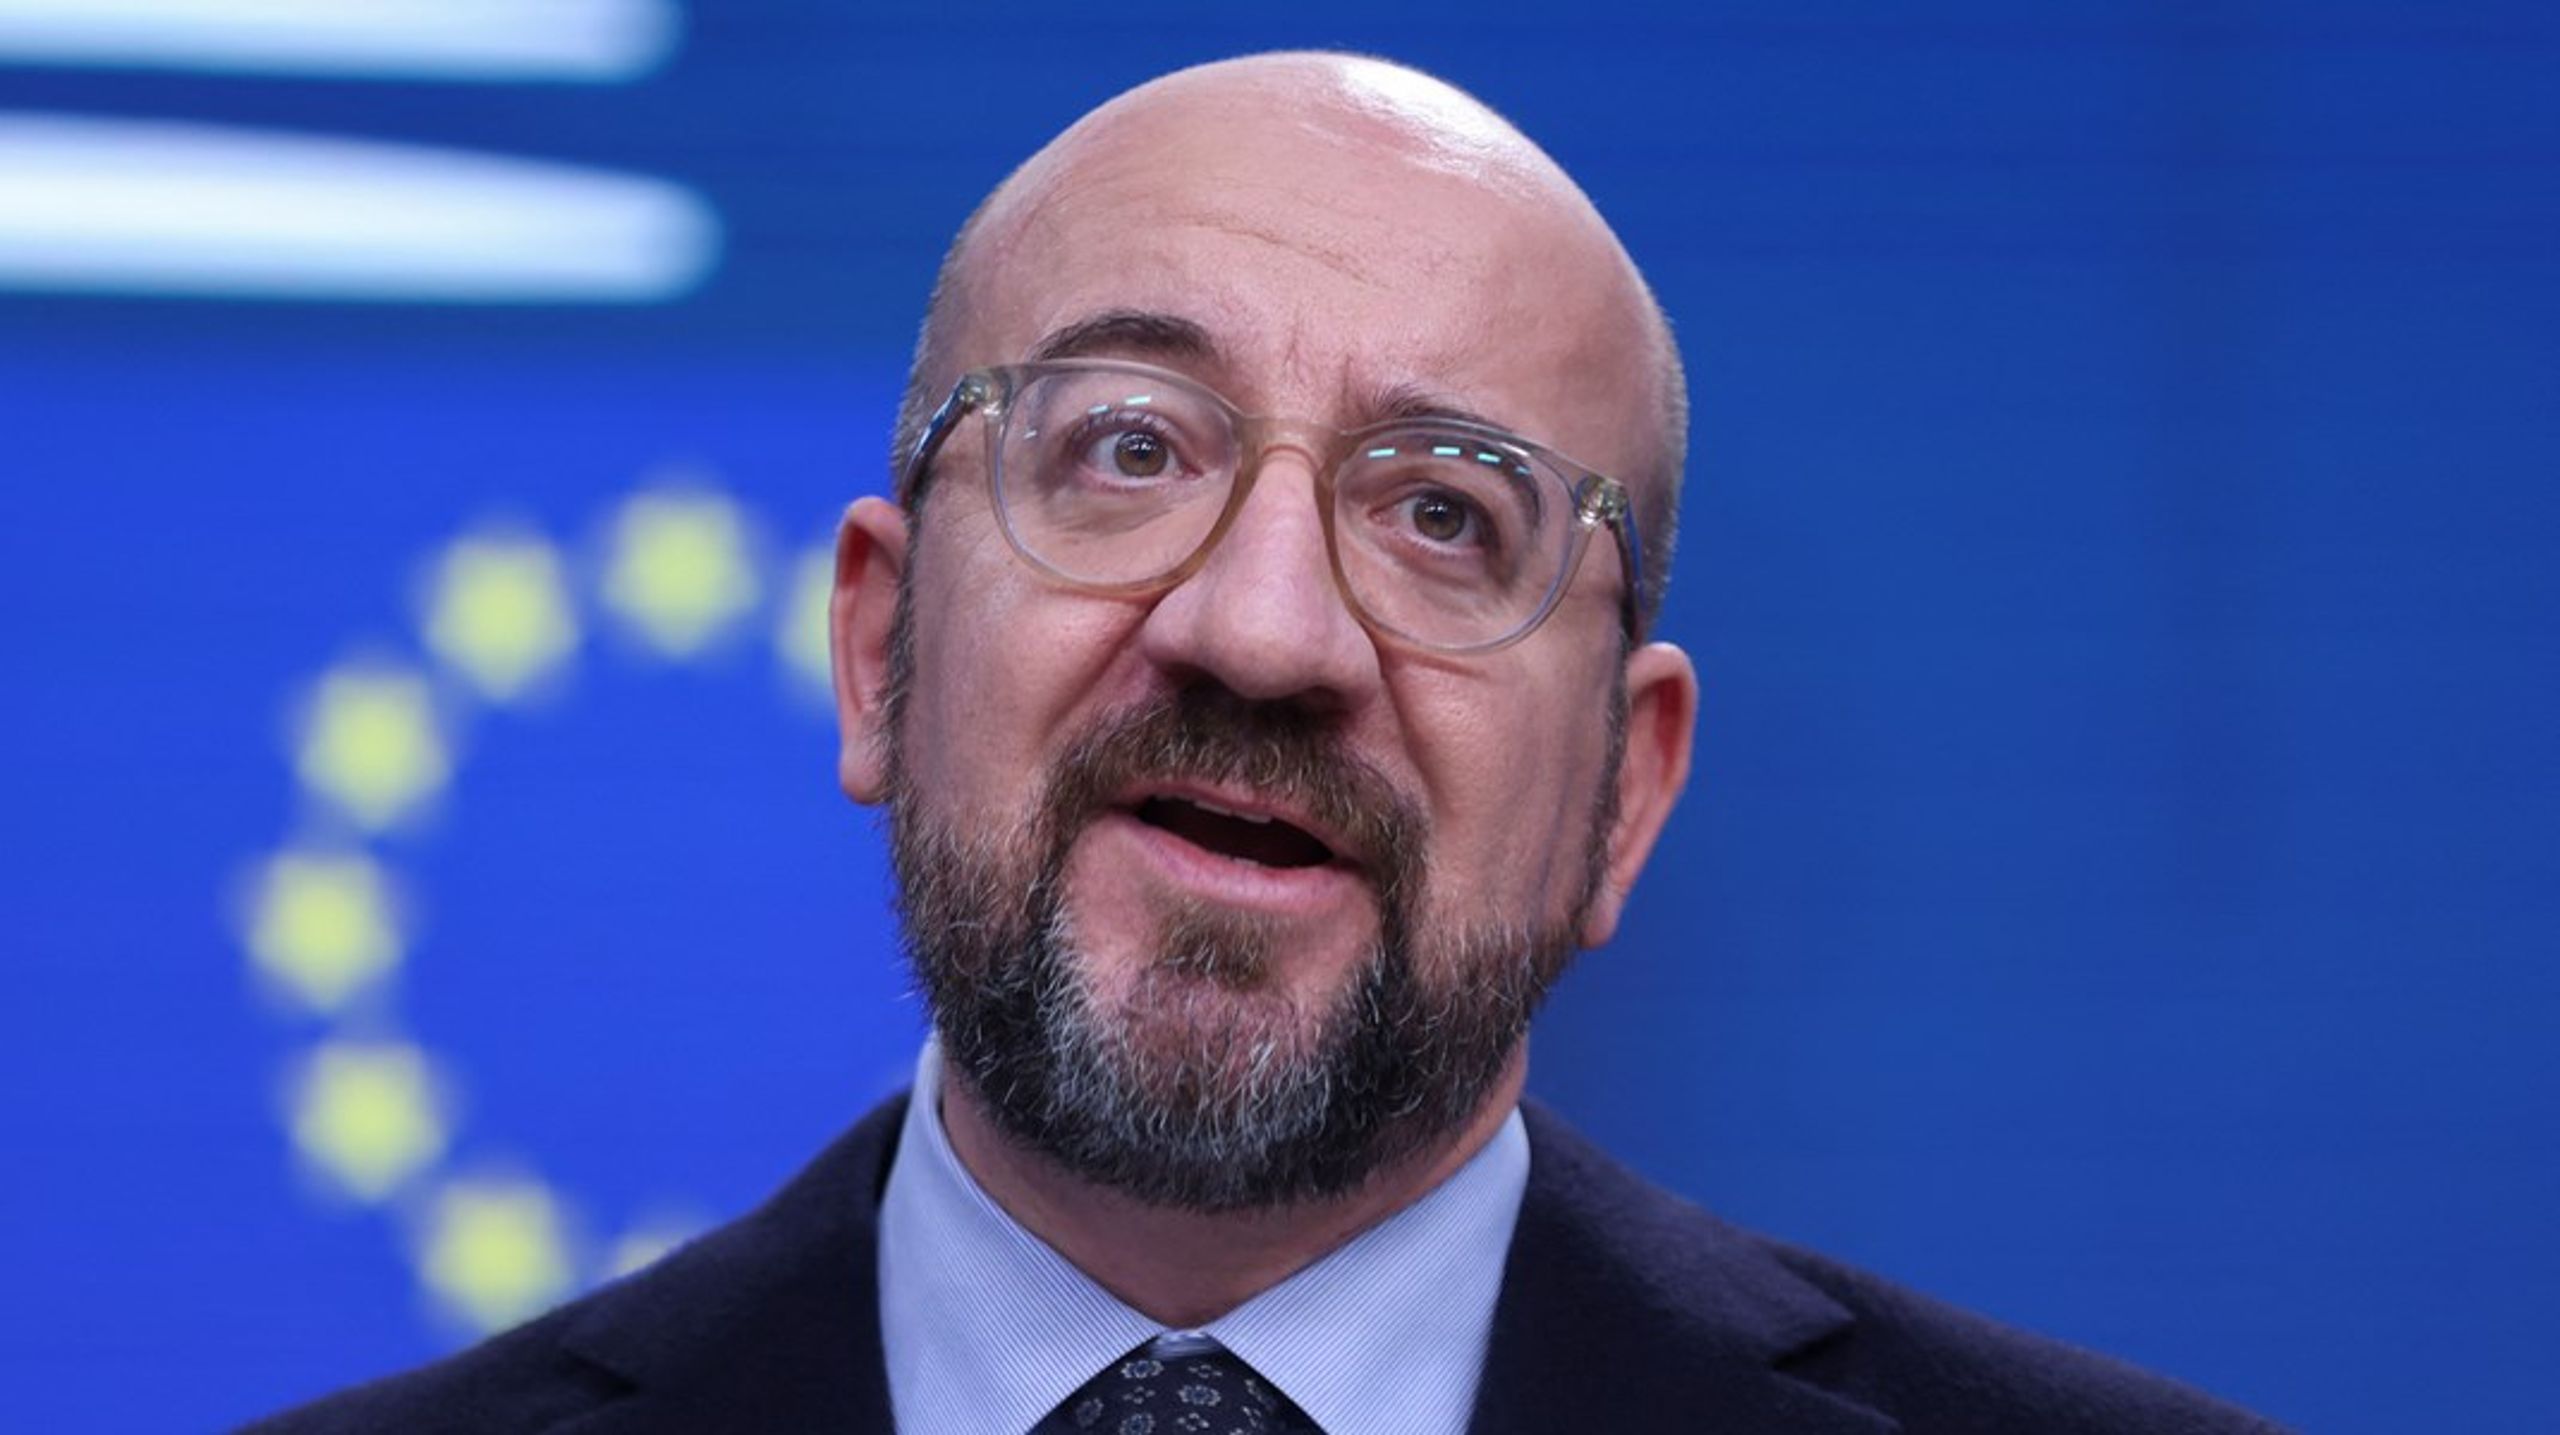 Charles Michel dropper sitt kandidatur til Europaparlamentsvalget, og fortsetter som president for Det europeiske råd ut november.